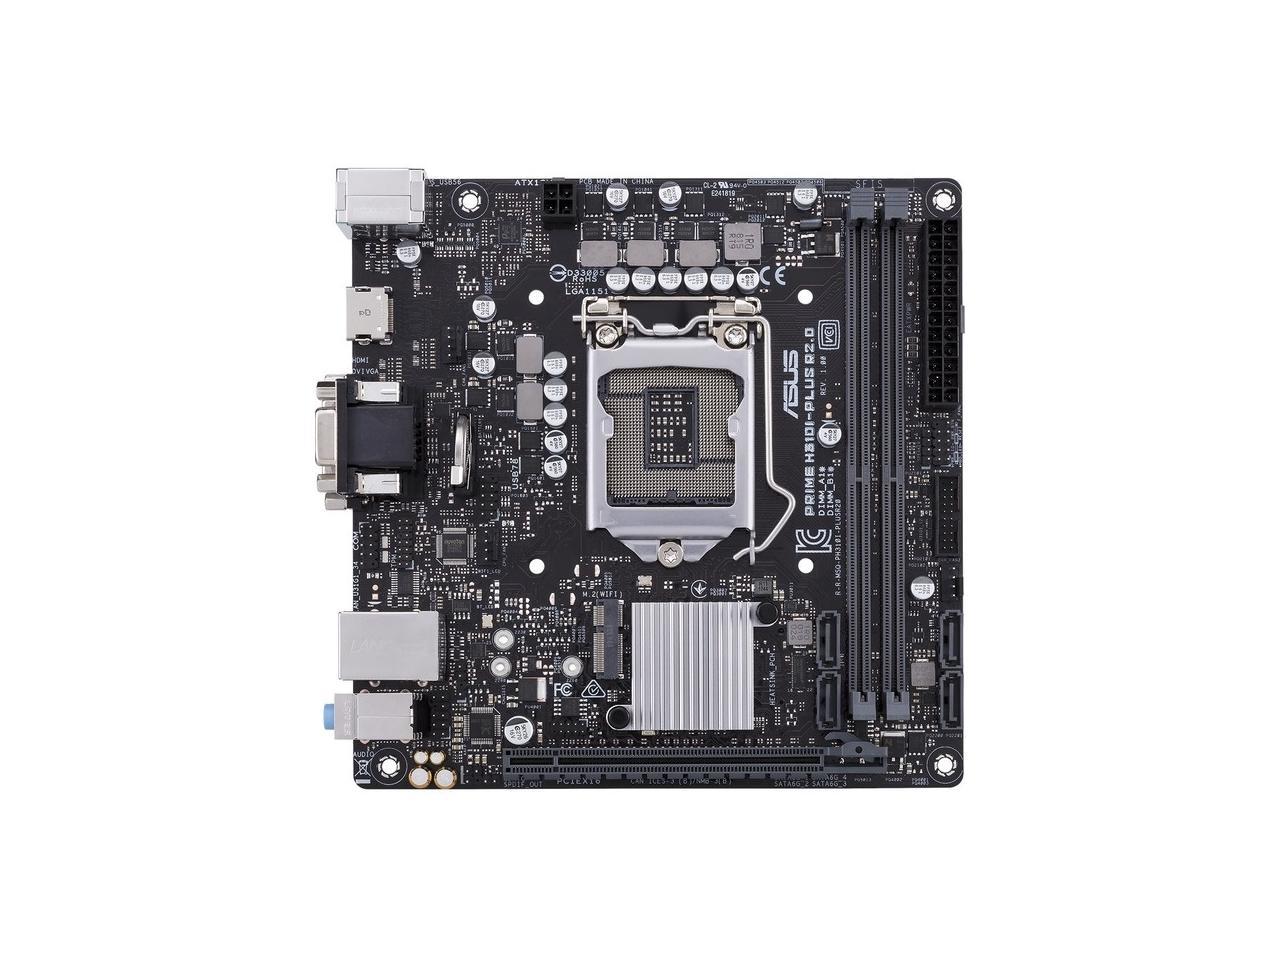 ASUS Prime H310I-PLUS R2.0/CSM LGA 1151 Intel H310 SATA 6Gb/s Mini ITX Intel Motherboard